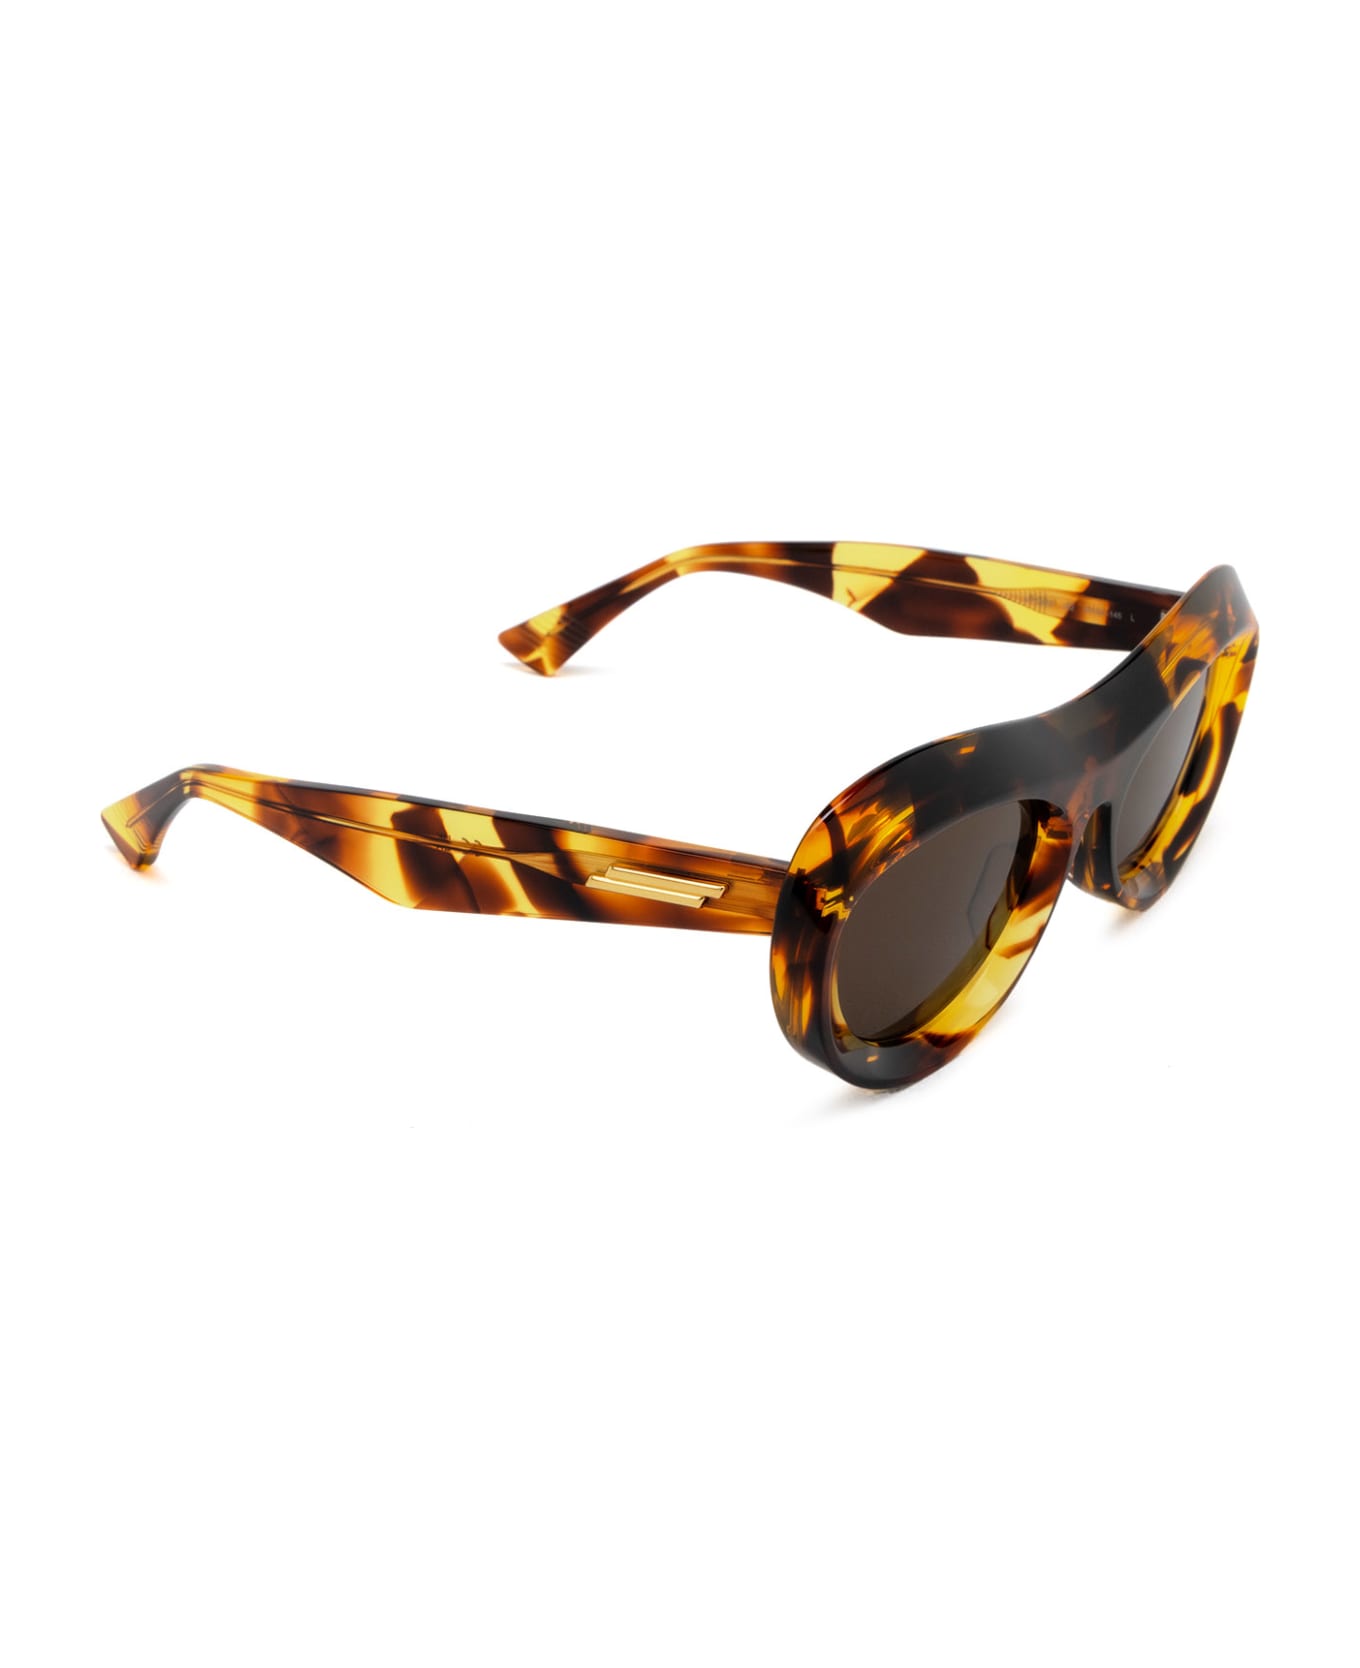 Bottega Veneta Eyewear Bv1284s Havana Sunglasses - Havana